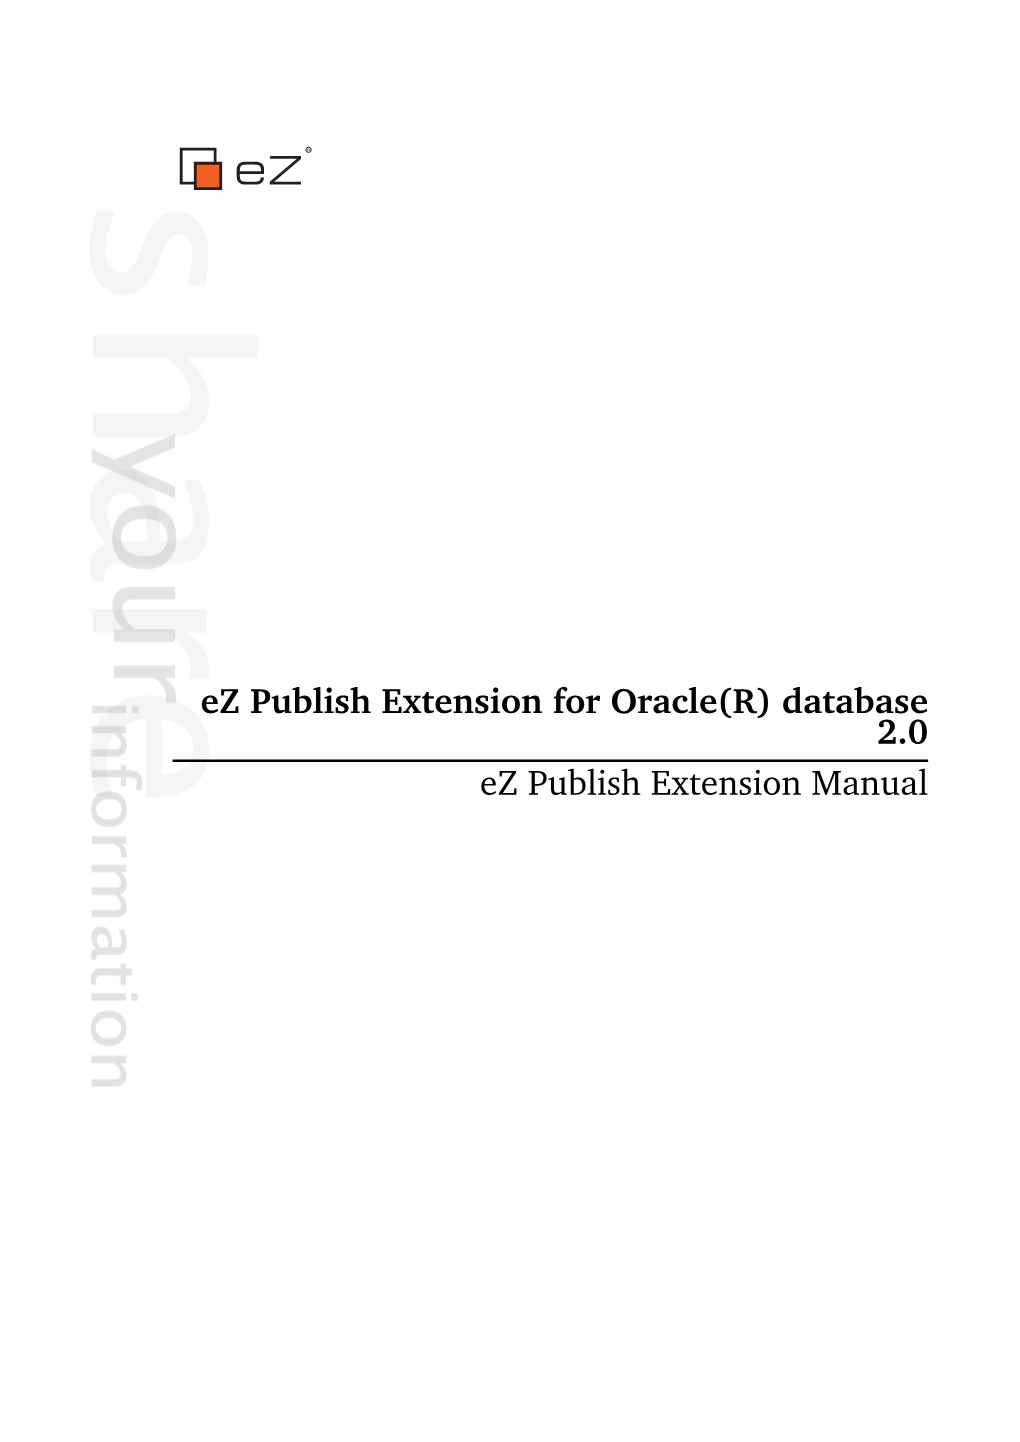 Ez Publish Extension for Oracle(R) Database 2.0 Ez Publish Extension Manual